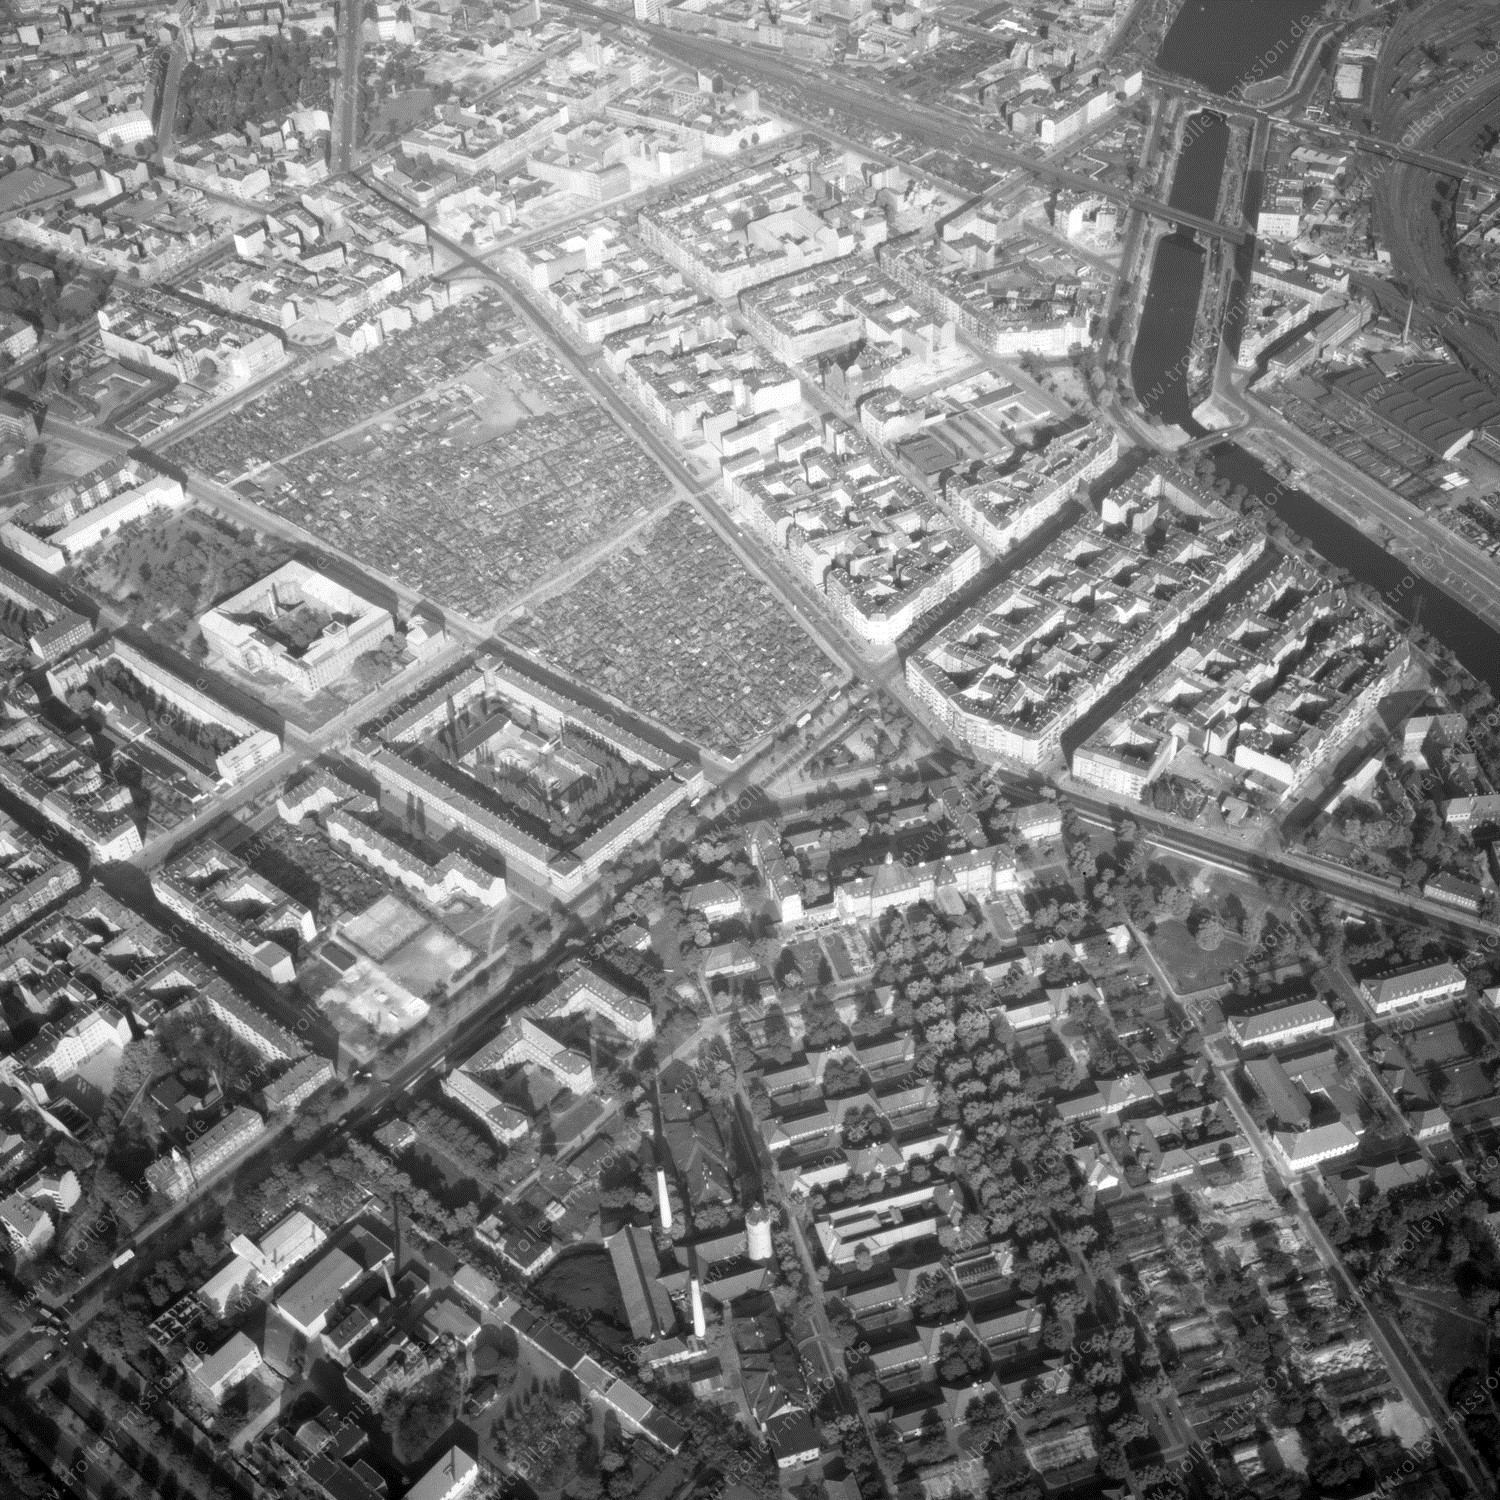 Alte Fotos und Luftbilder von Berlin - Luftbildaufnahme Nr. 08 - Historische Luftaufnahmen von West-Berlin aus dem Jahr 1954 - Flugstrecke Oscar